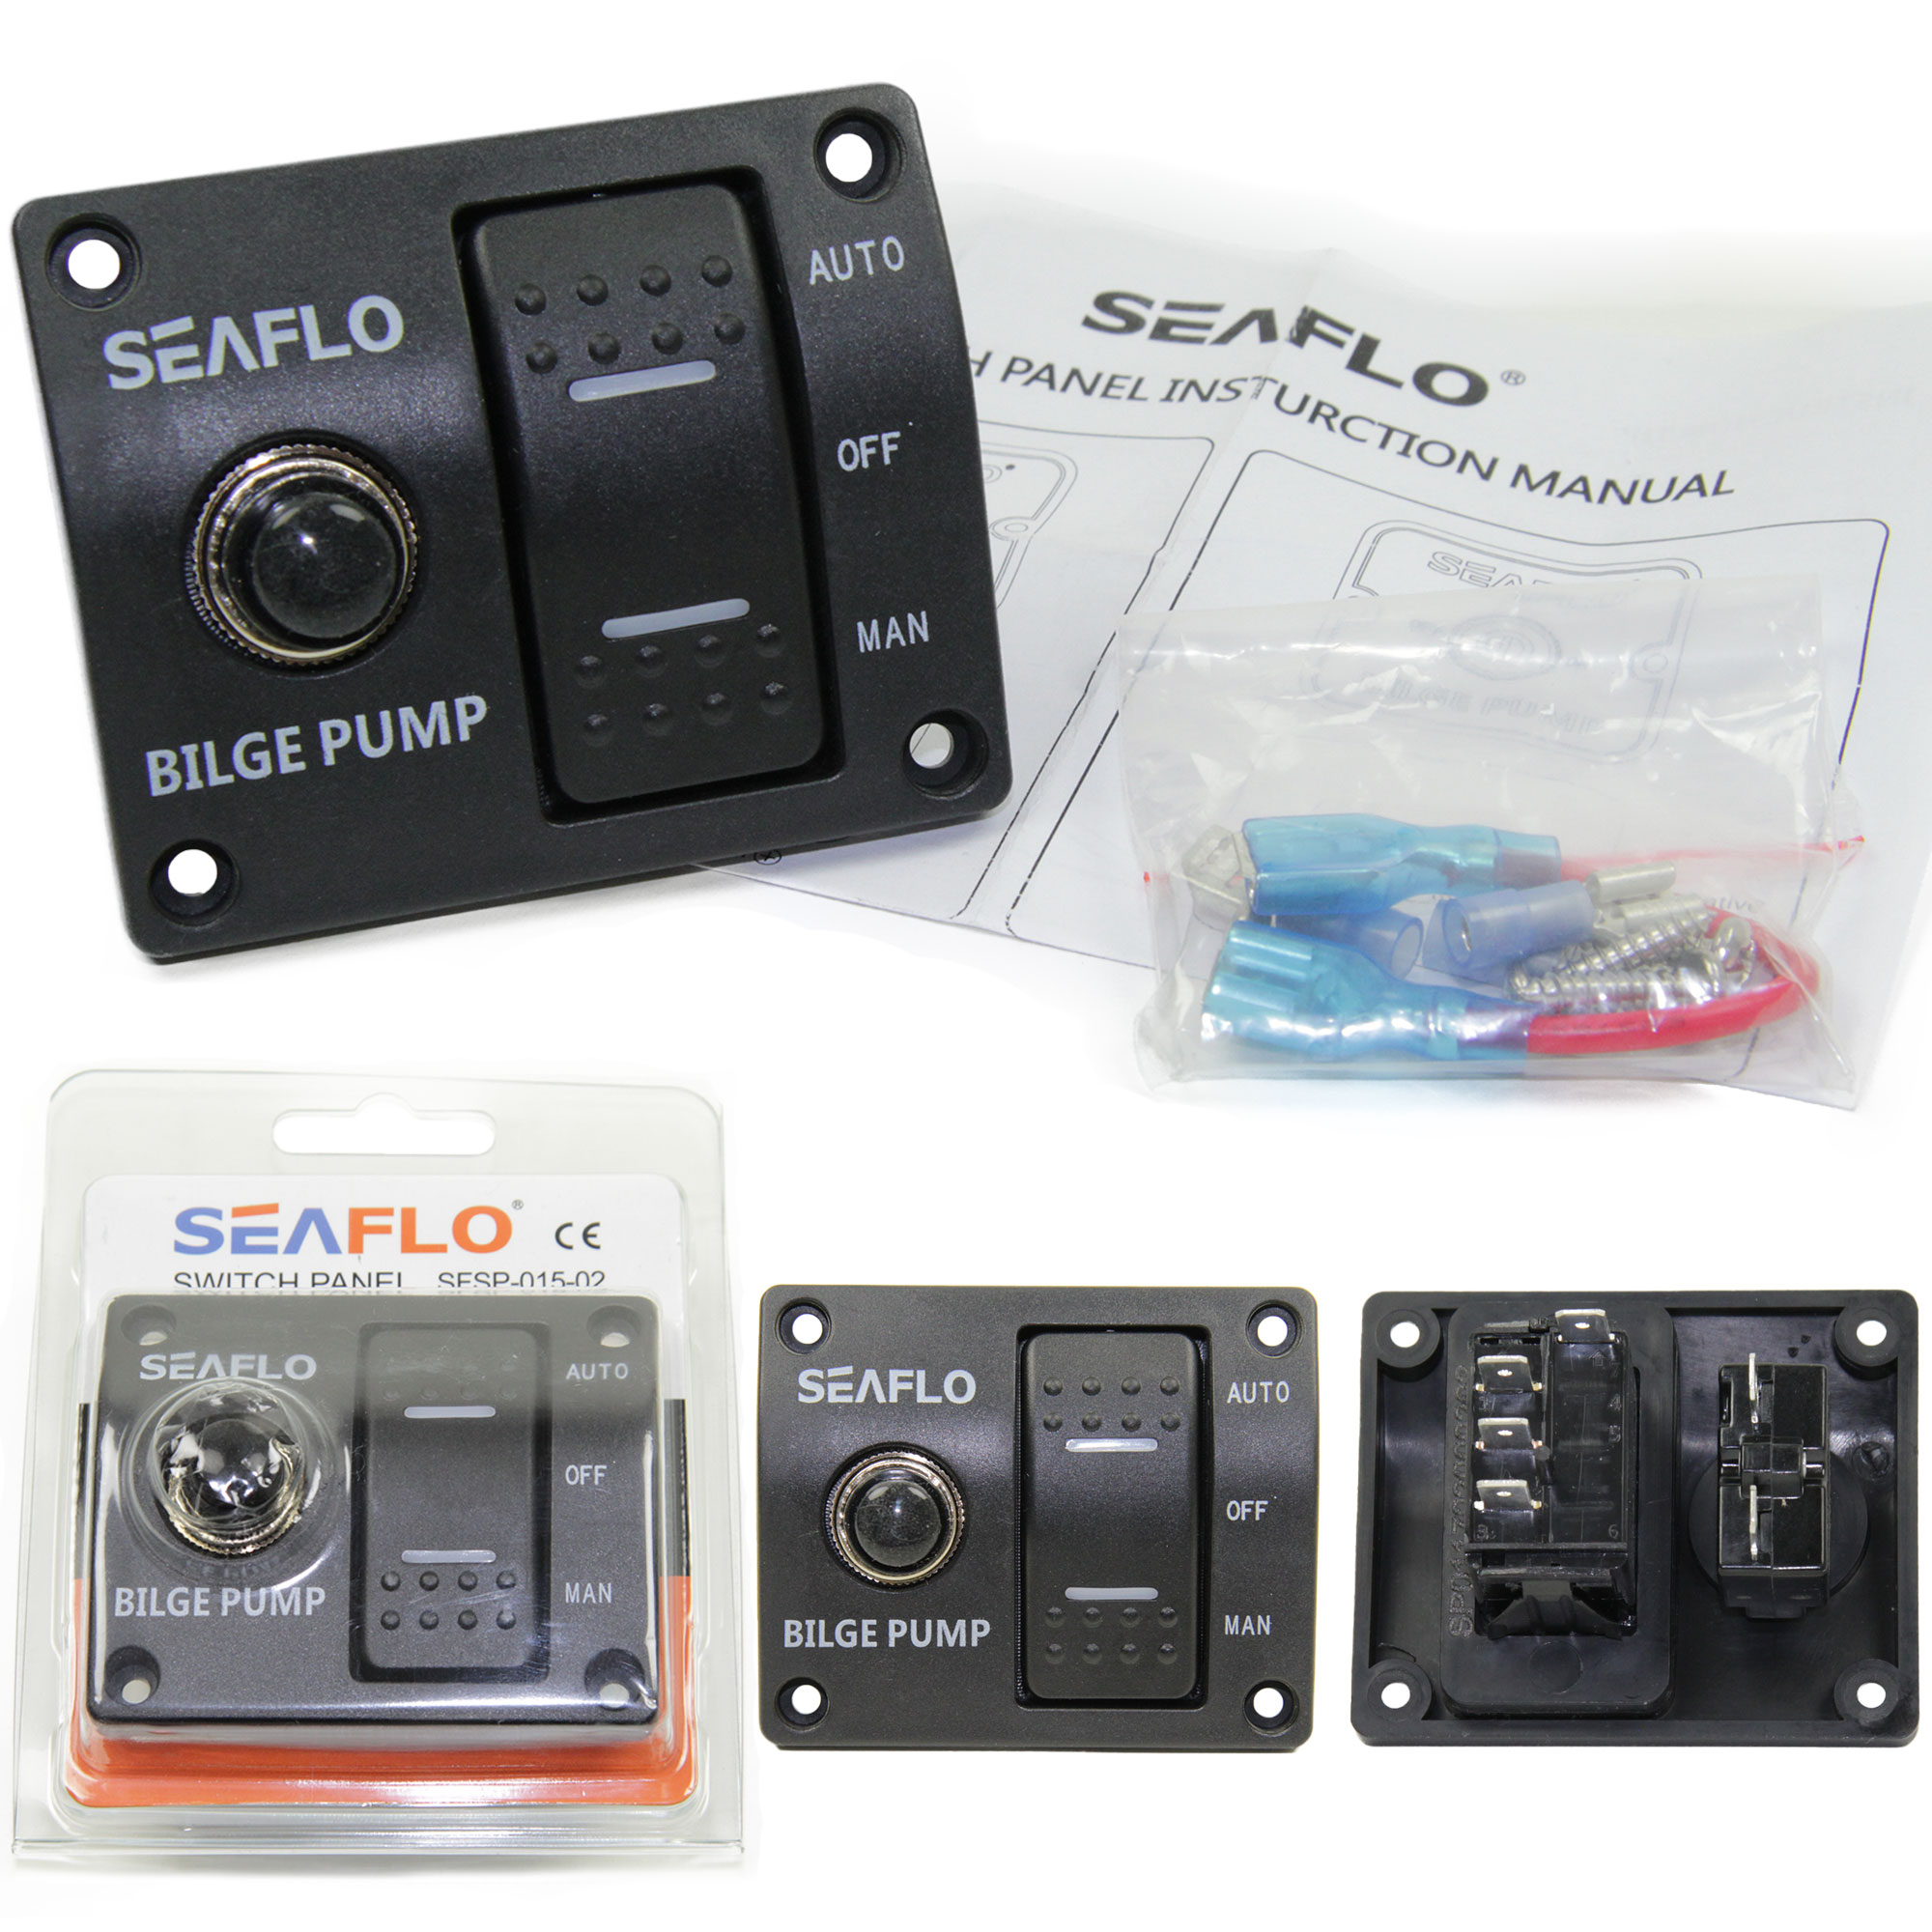 SEAFLO ® Schaltpaneel für Bilge Pumpe